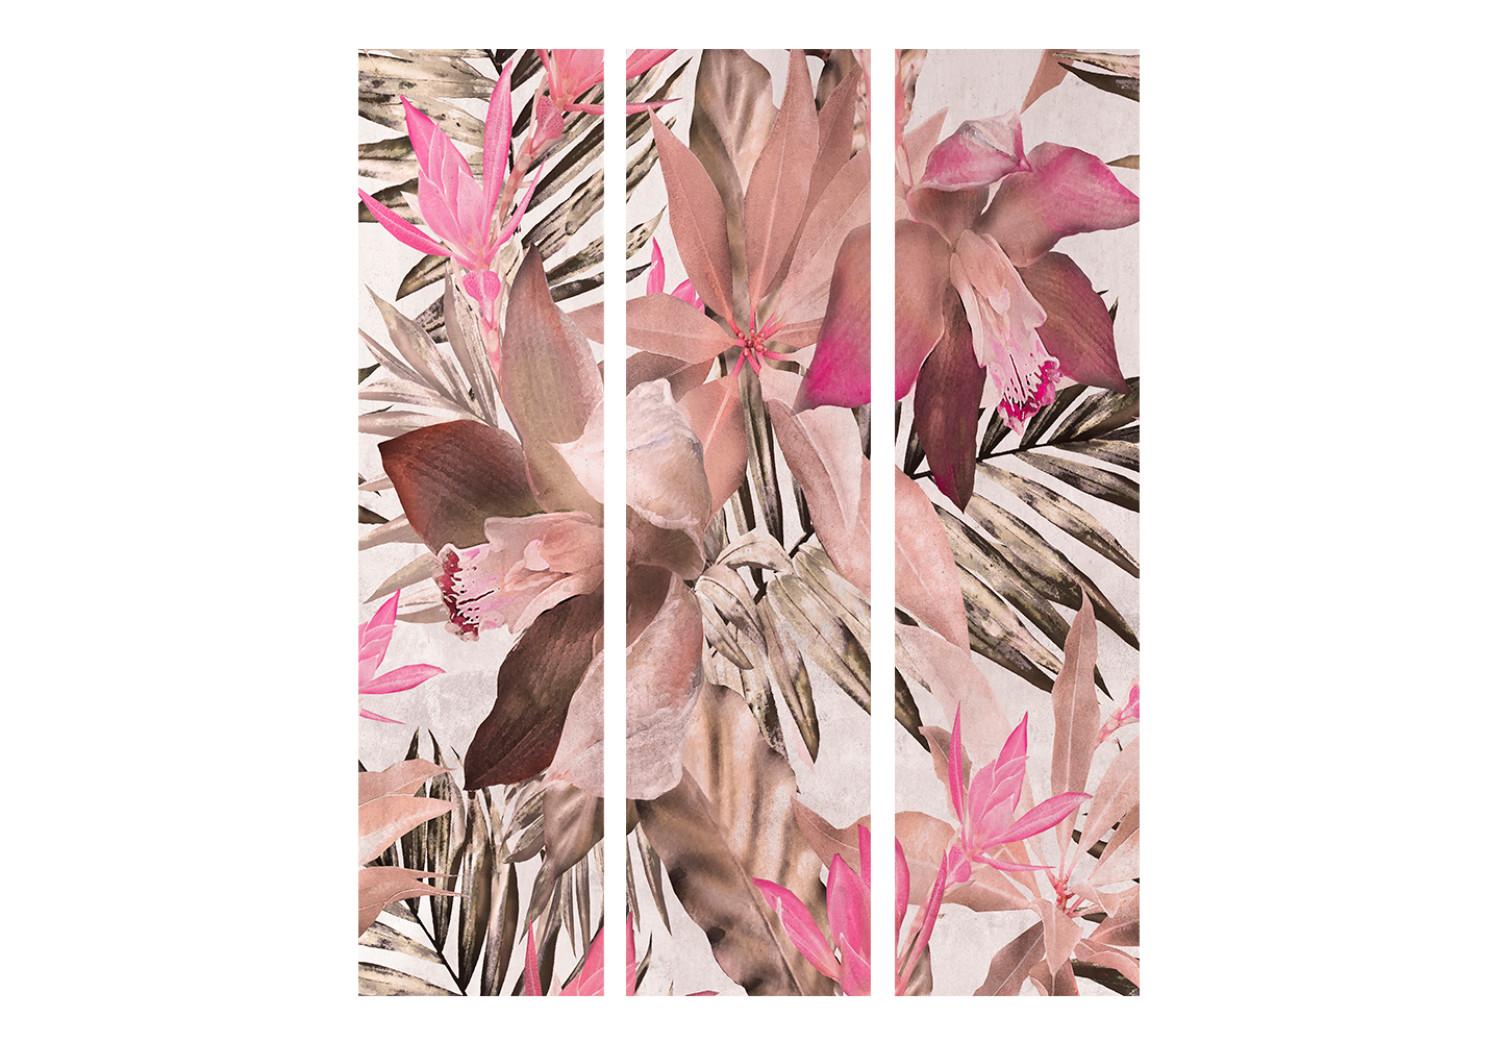 Biombo original Jungla florecida (3 piezas) - motivo floral en fondo claro